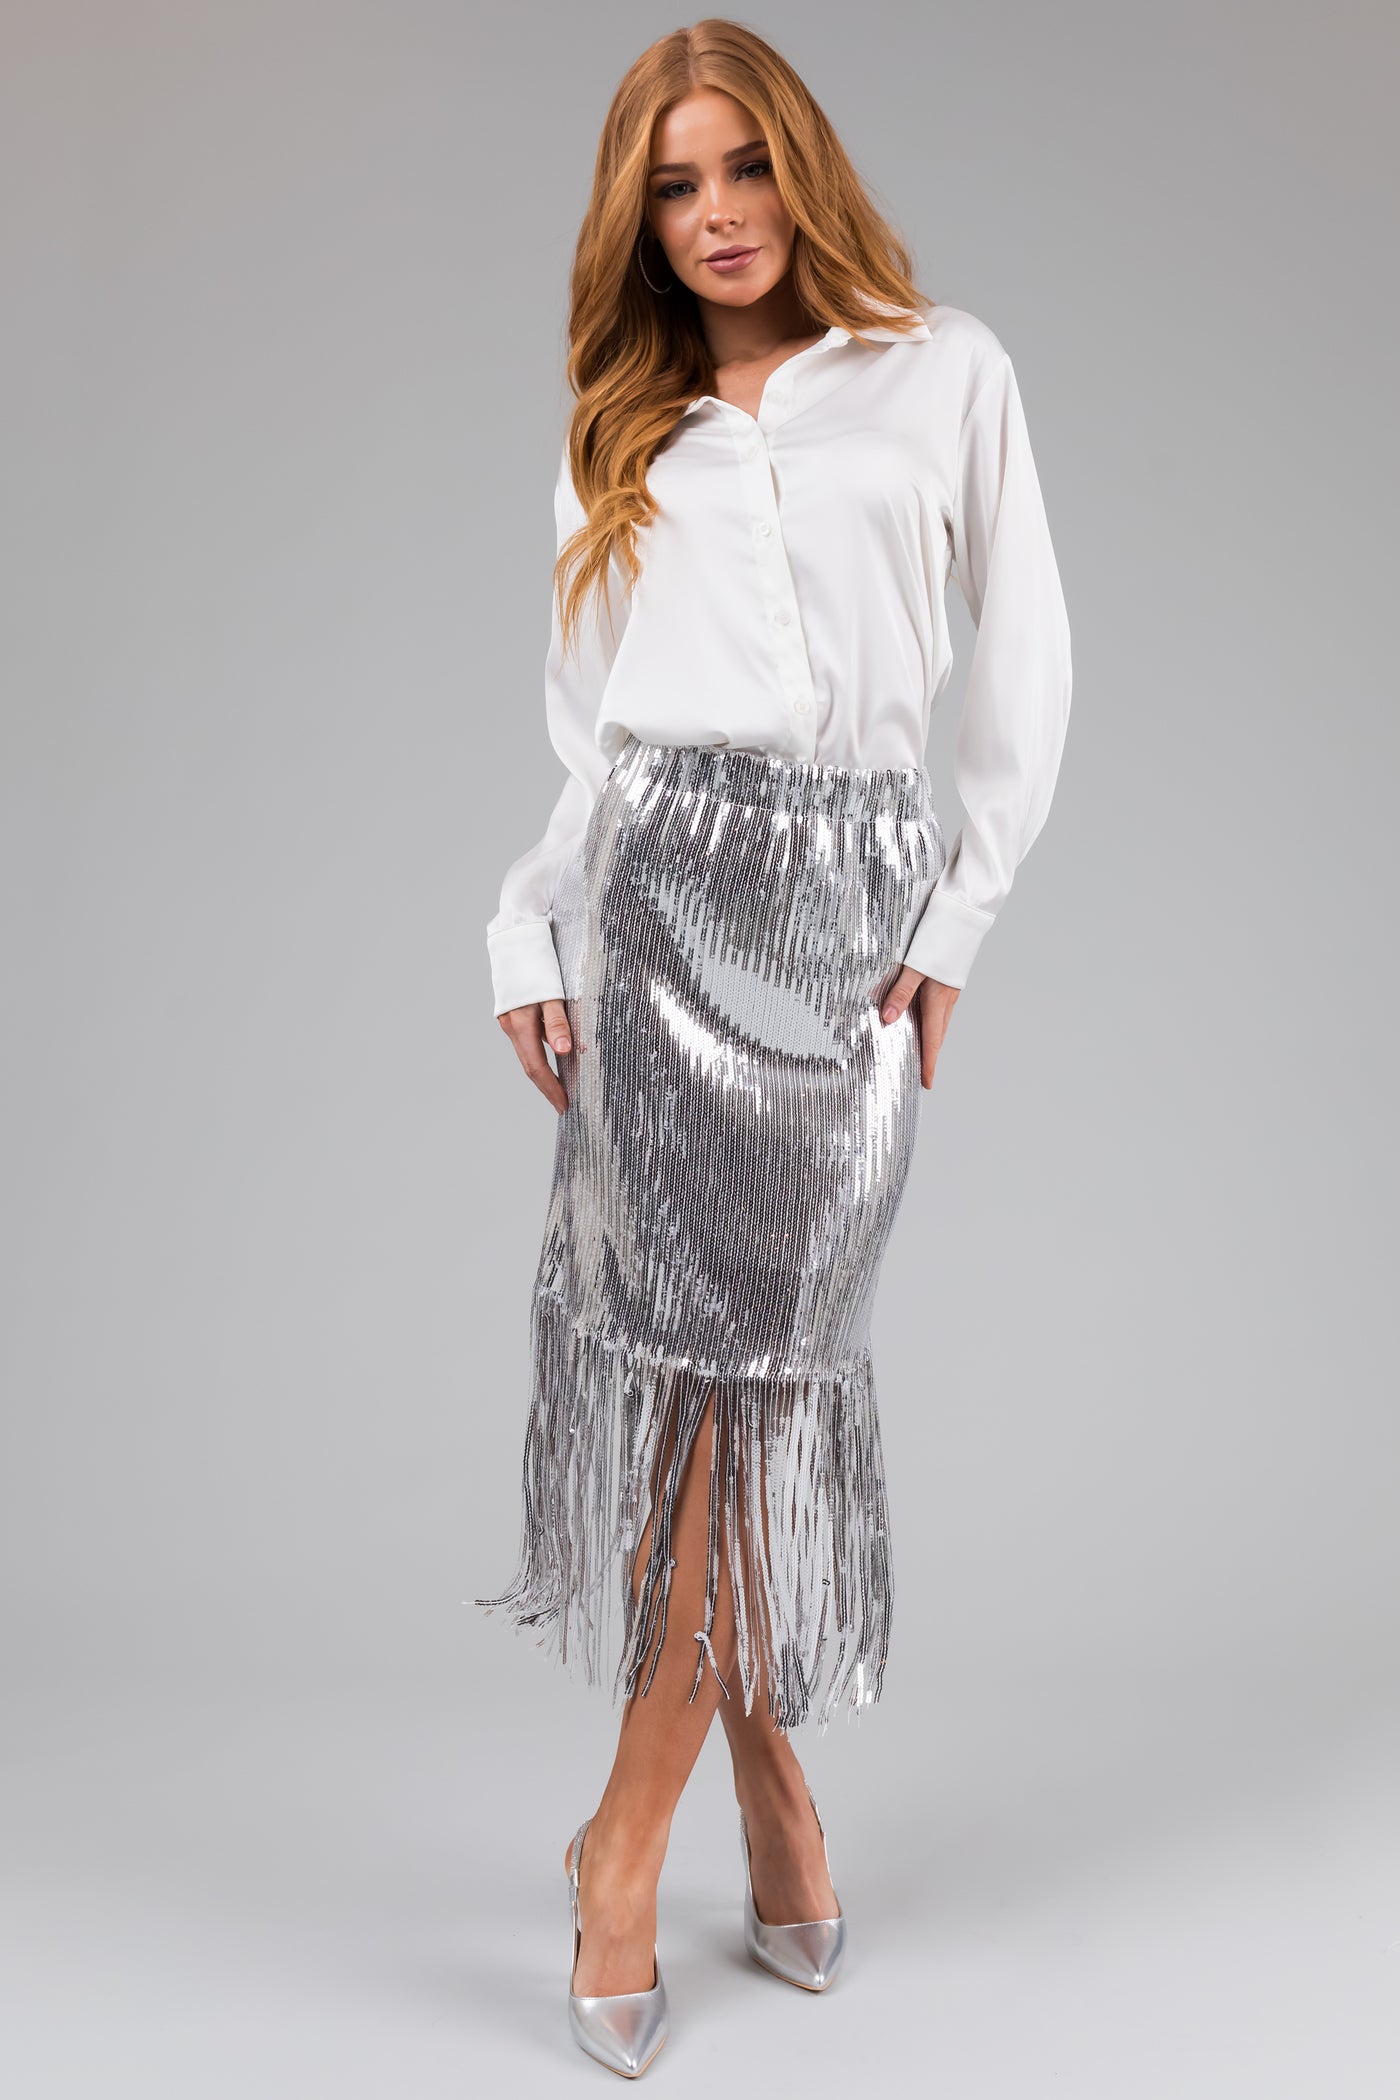 Silver Sequin Fringe Hemline Midi Skirt